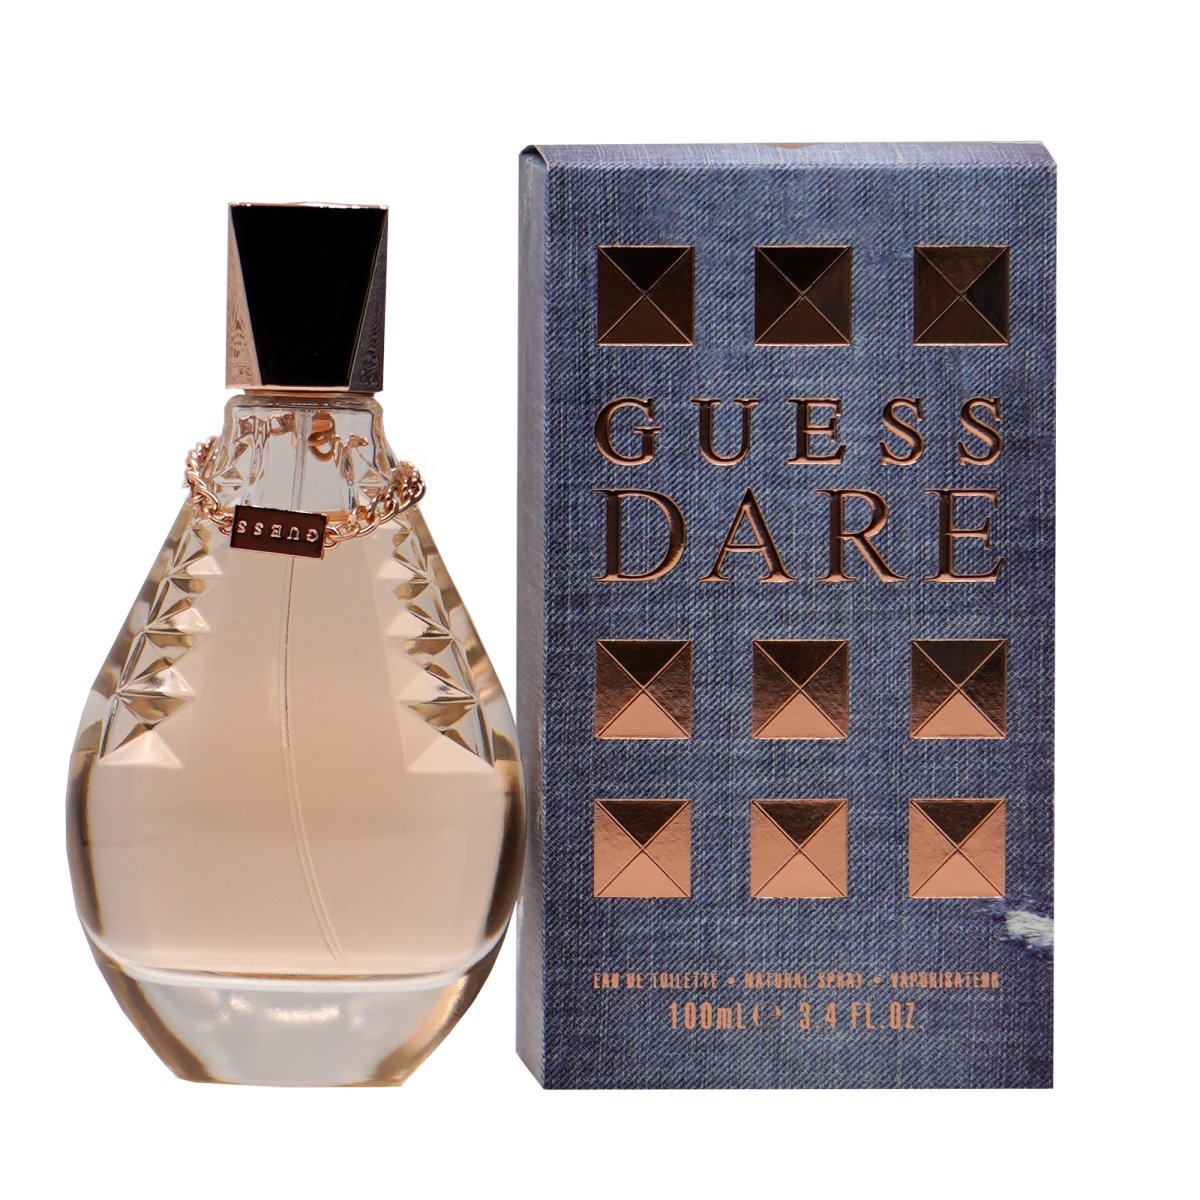 GUESS Dare Women's Eau de Toilette 3.4 oz - Perfume Headquarters - Guess - 3.4 oz - Eau de Toilette - Fragrance - 3607347879367 - Fragrance